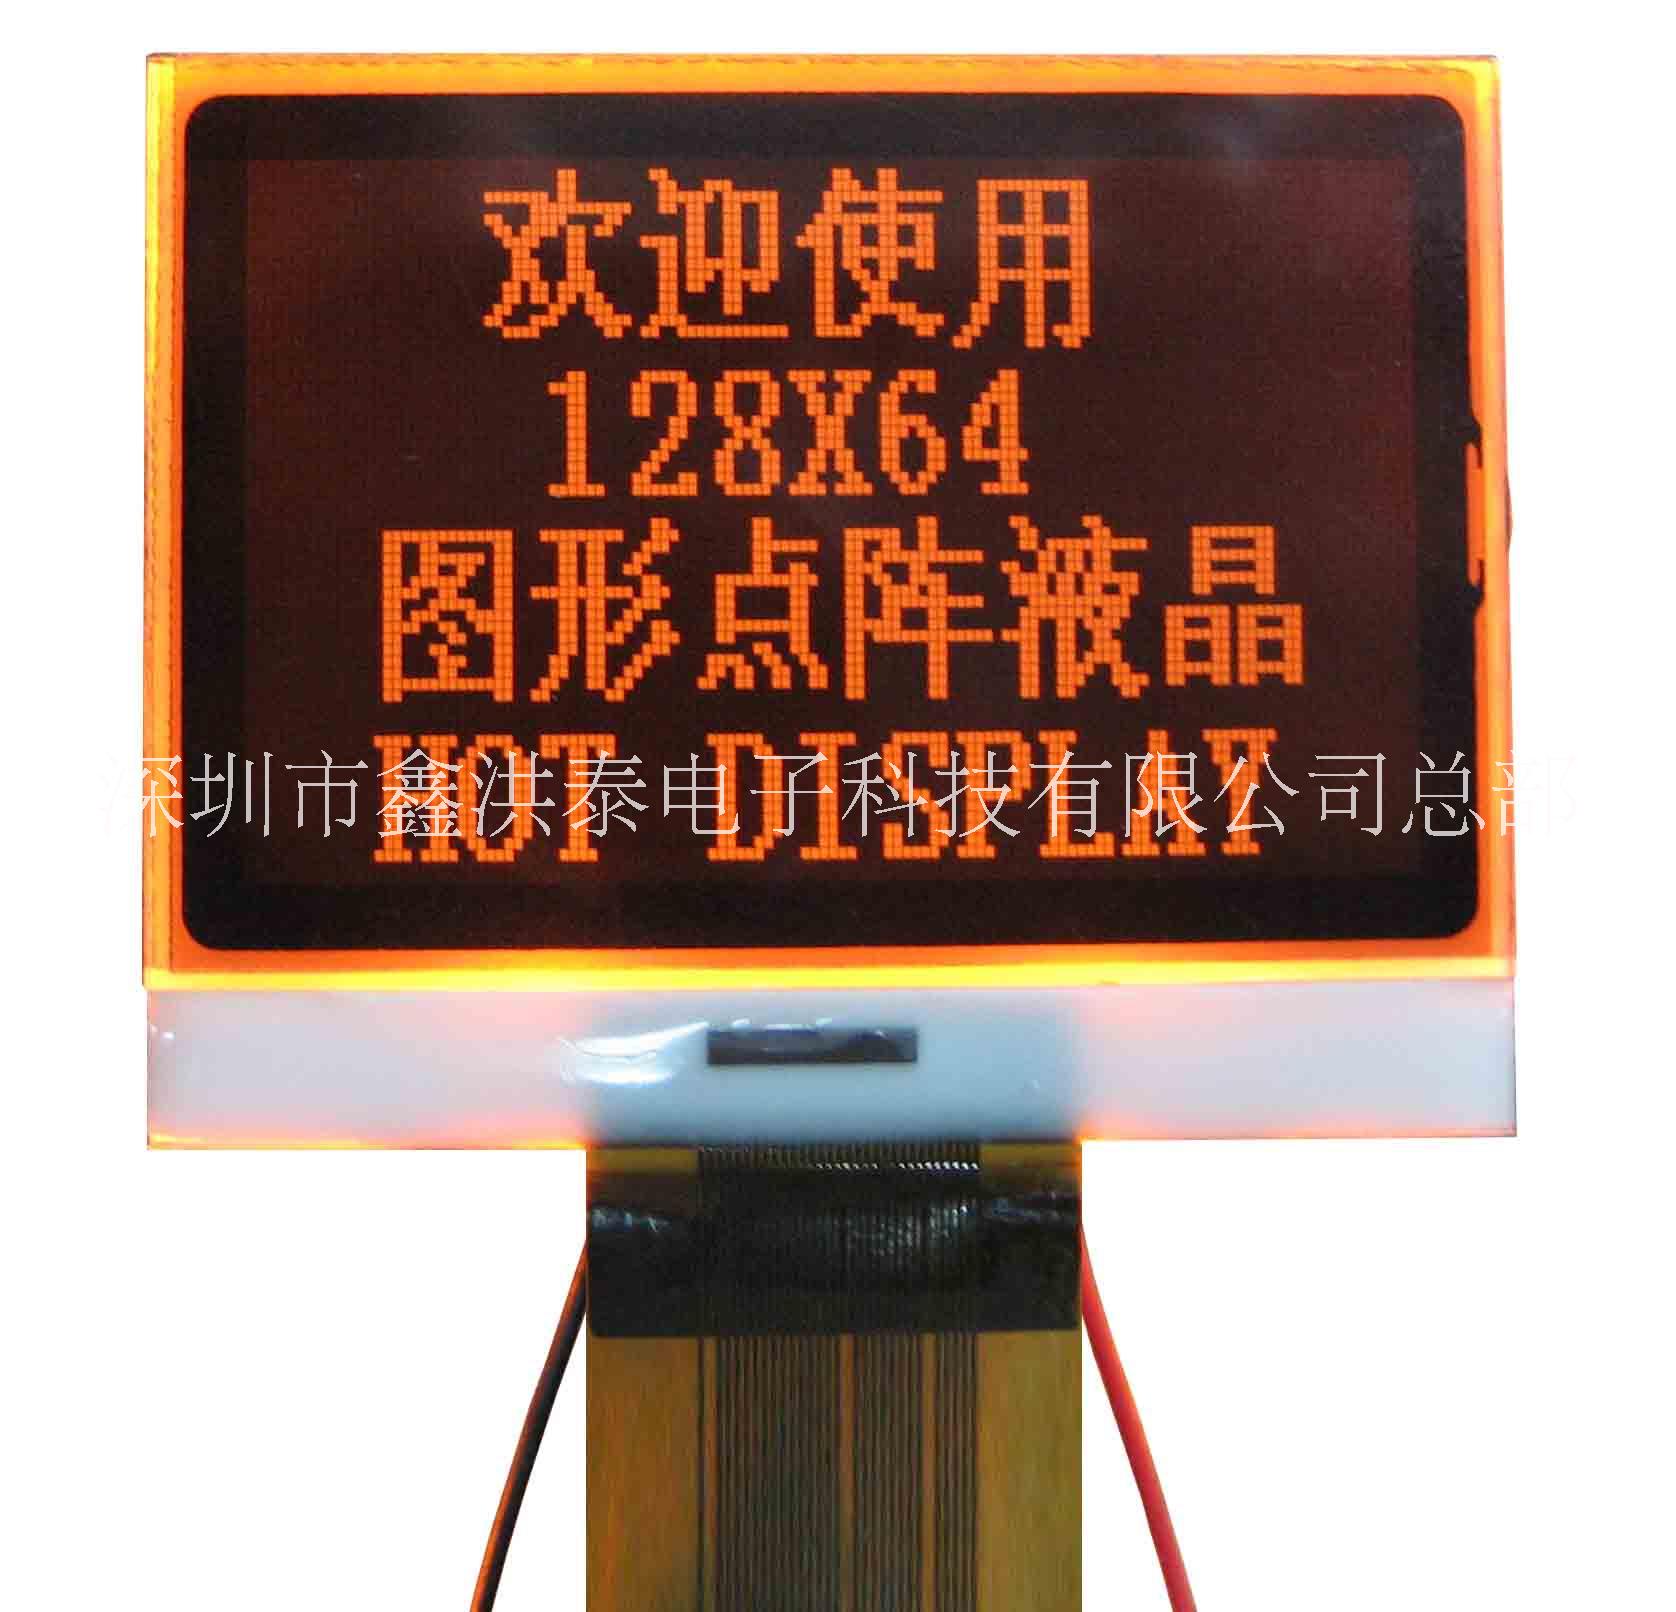 小尺寸LCD显示屏厂家报价、深圳小尺寸LCD显示屏工厂